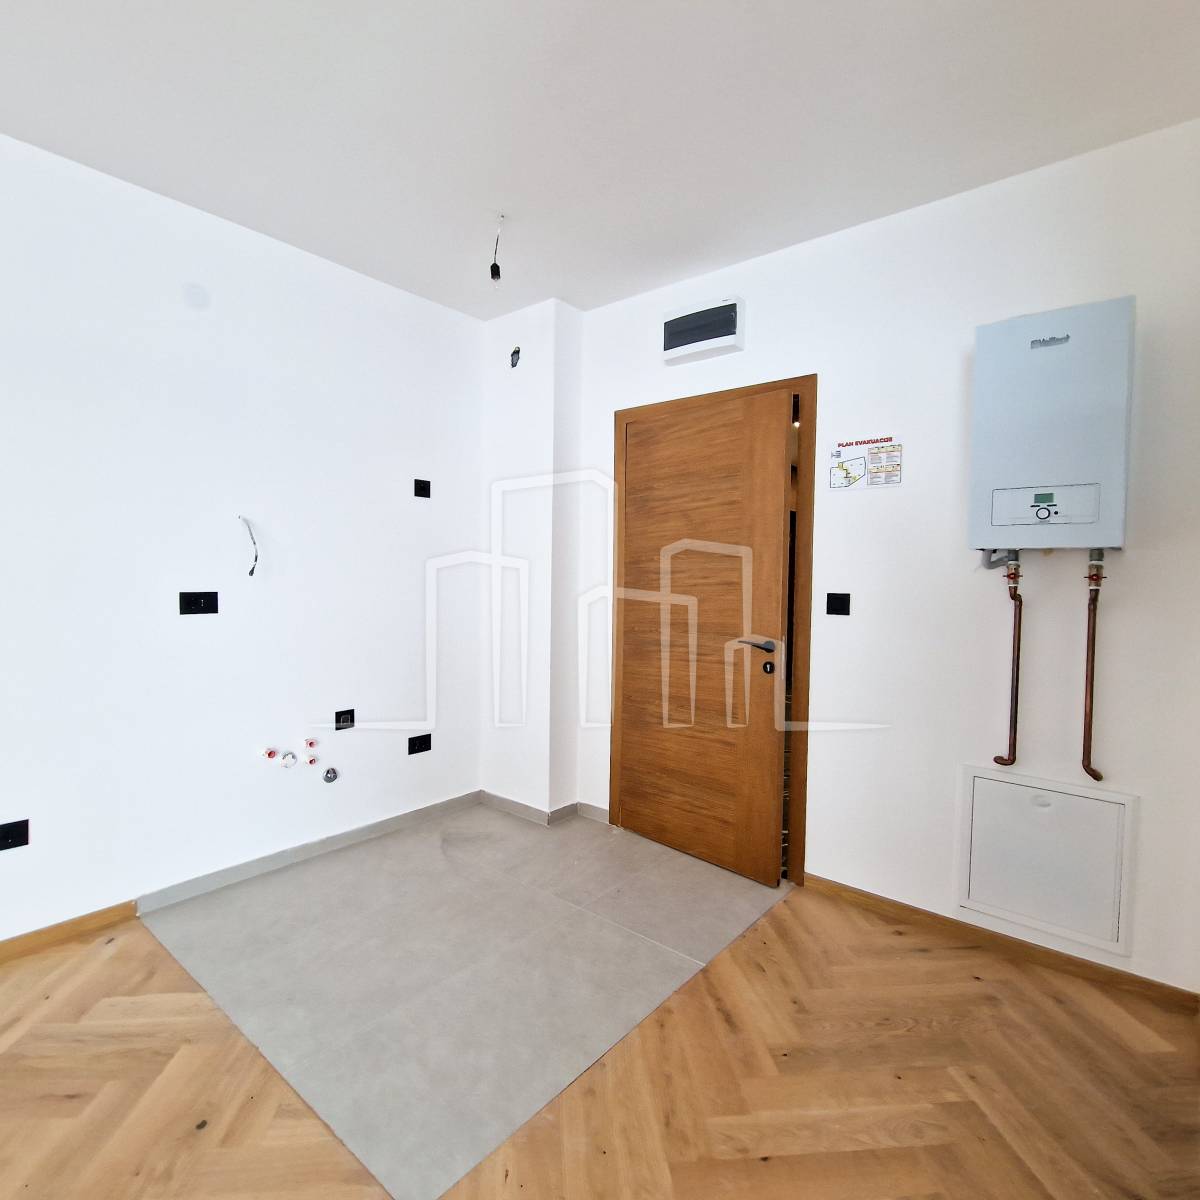 Studio apartman 25m² sprat 3 Pogled Poljice